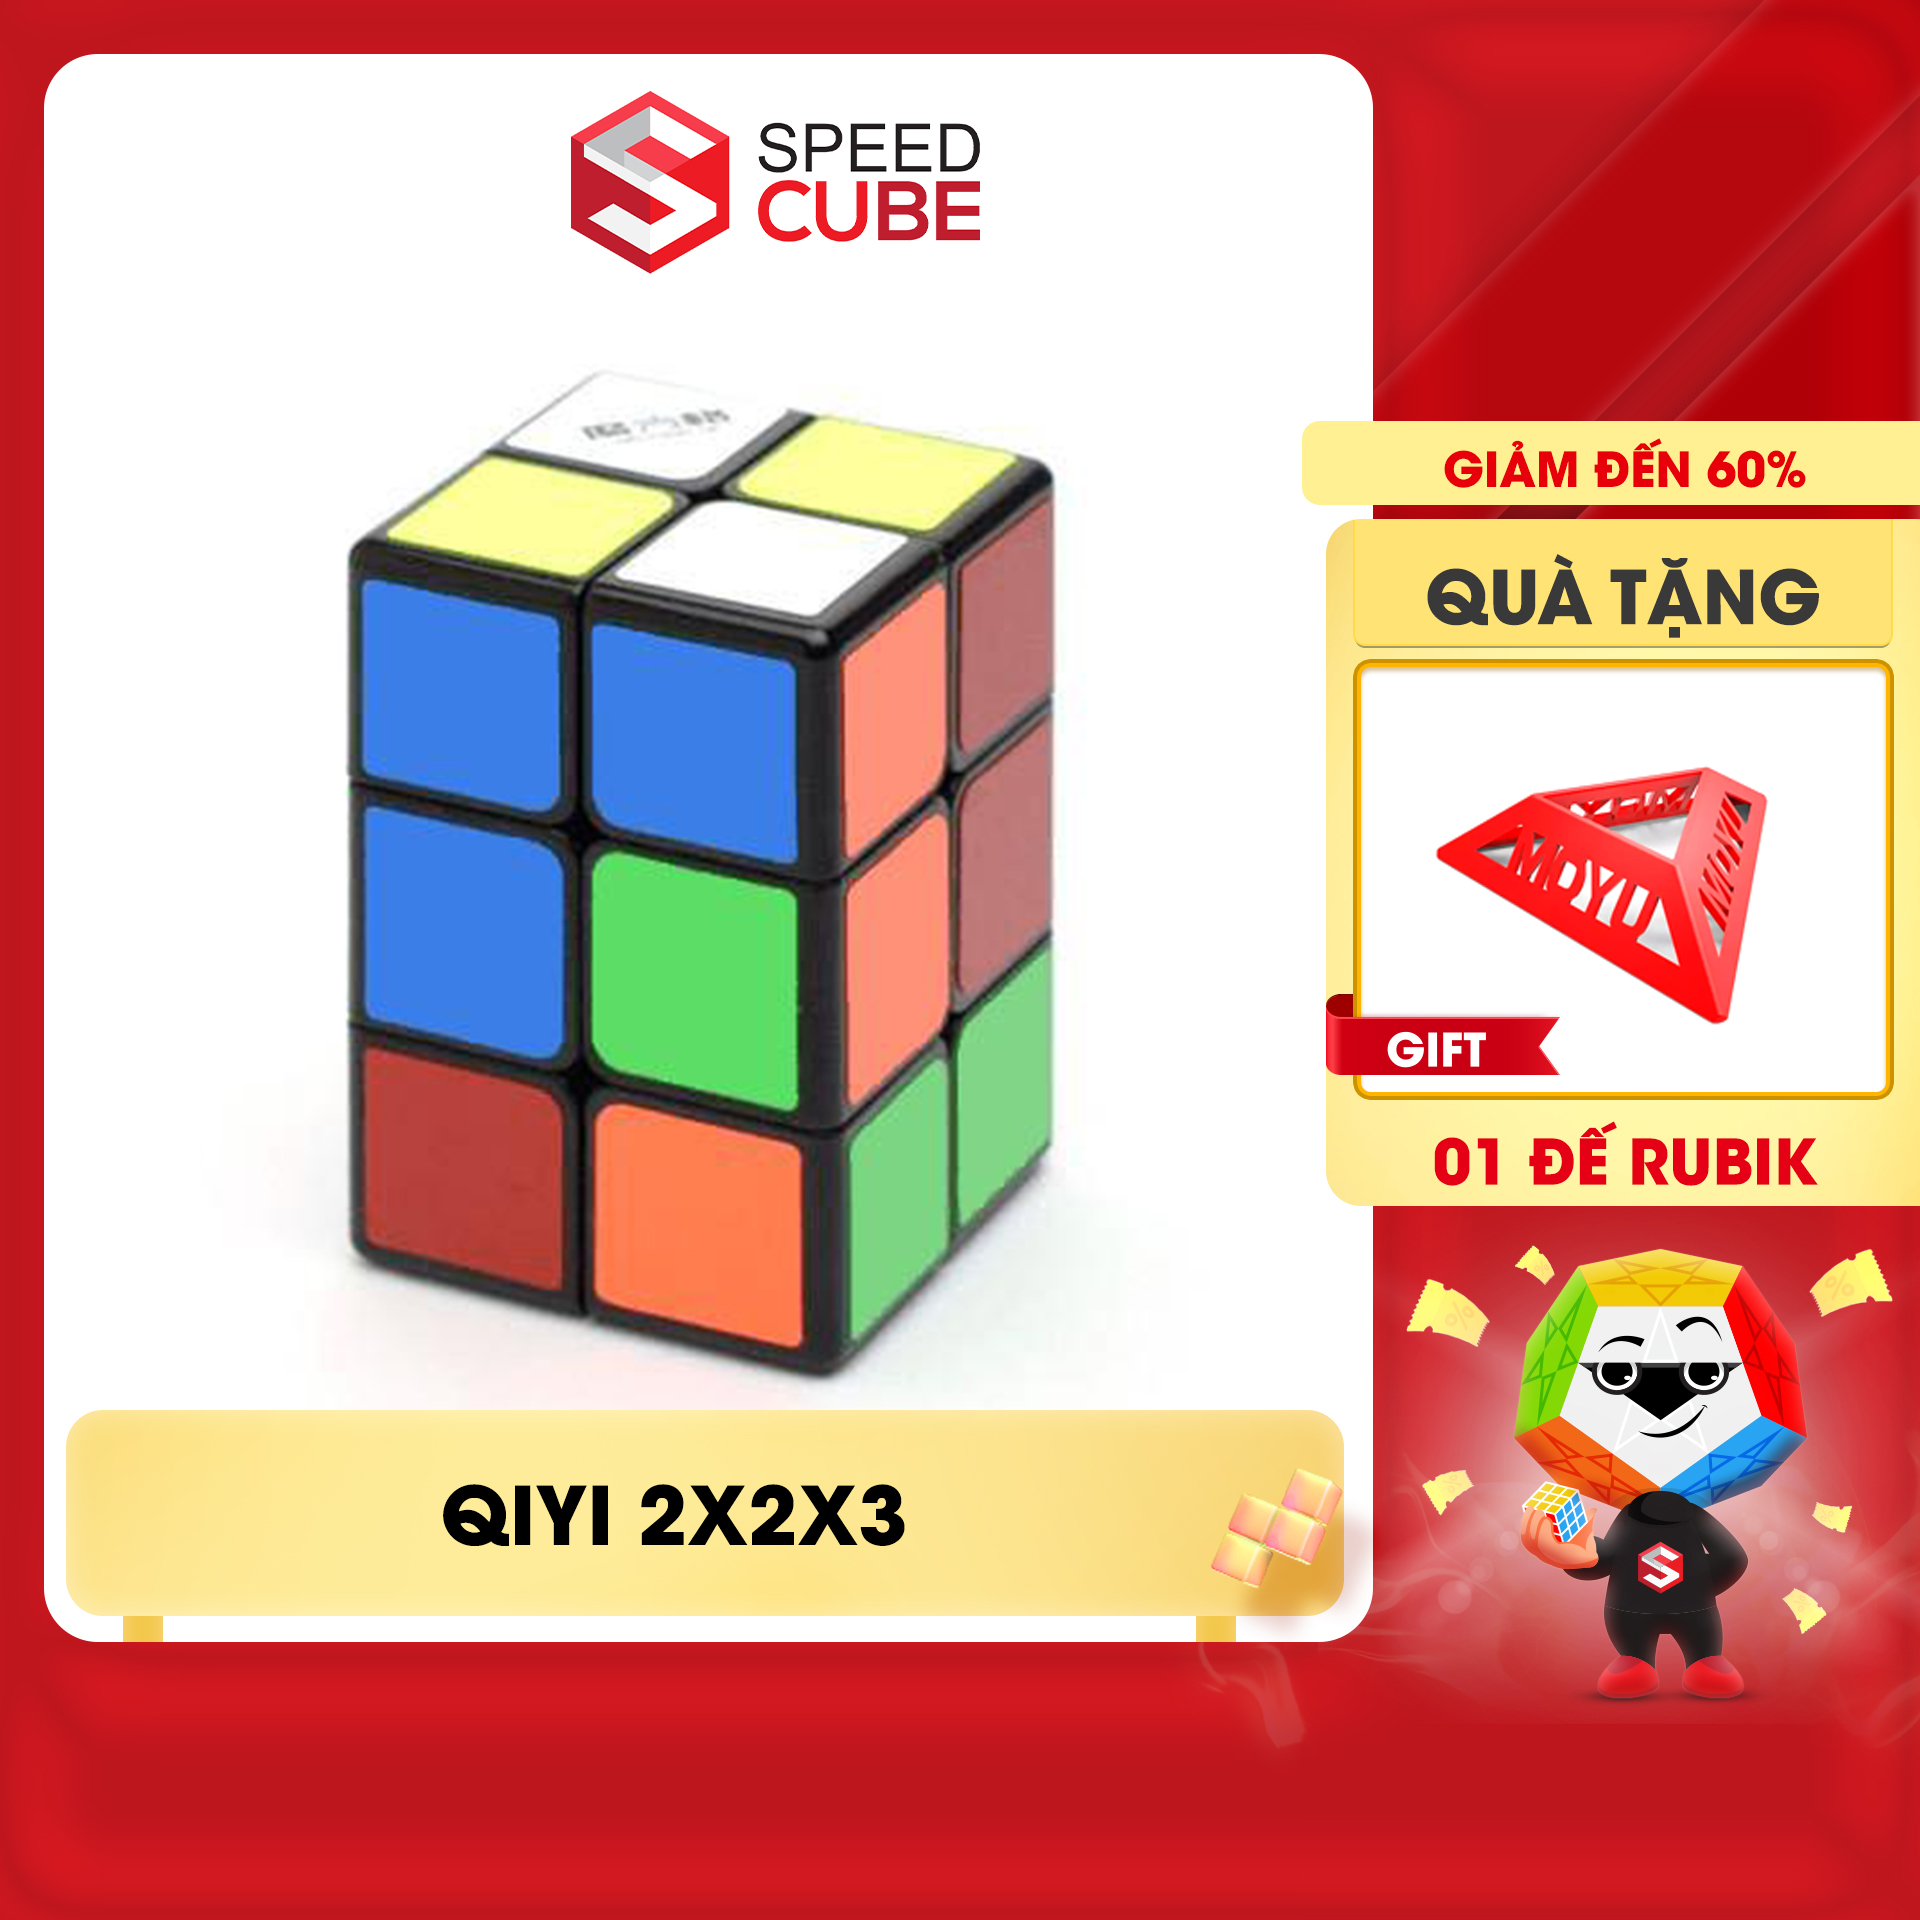 Rubik s Cube variant Qiyi 2x2x3 variations Rubic cheap-shop speed cube